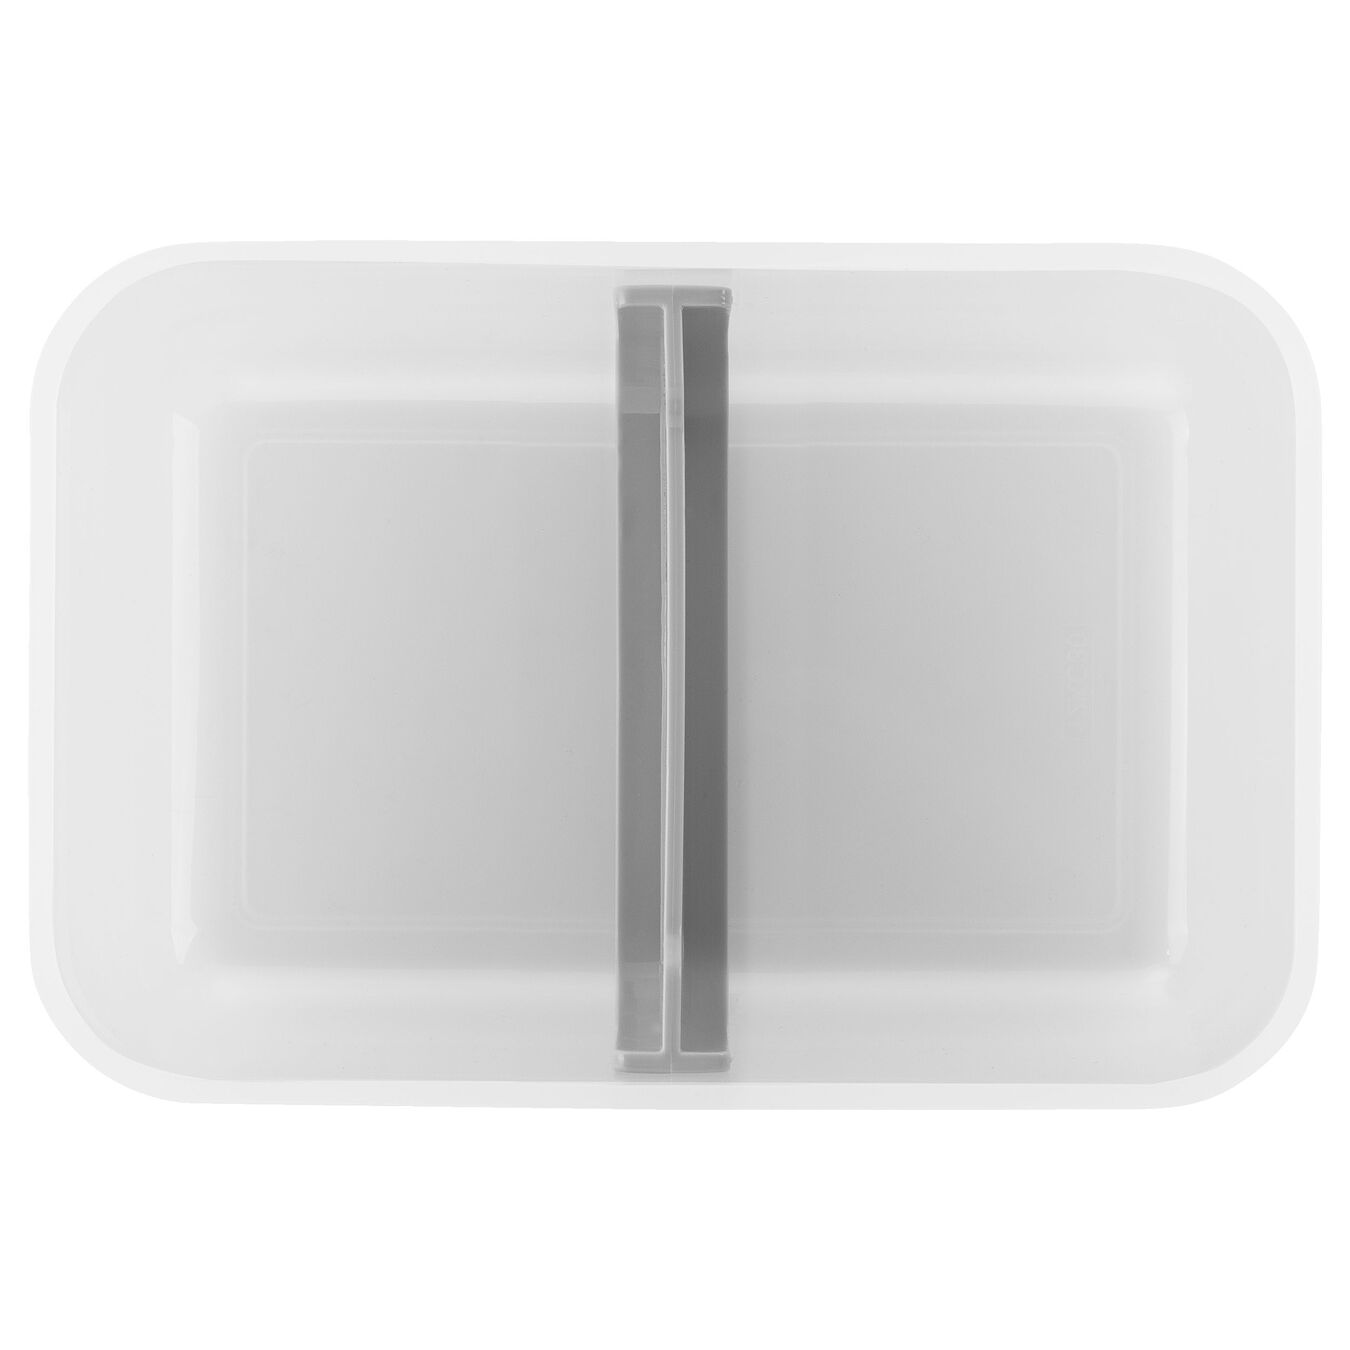 Lunch box sottovuoto L, plastica, semi trasparente-grigio,,large 4